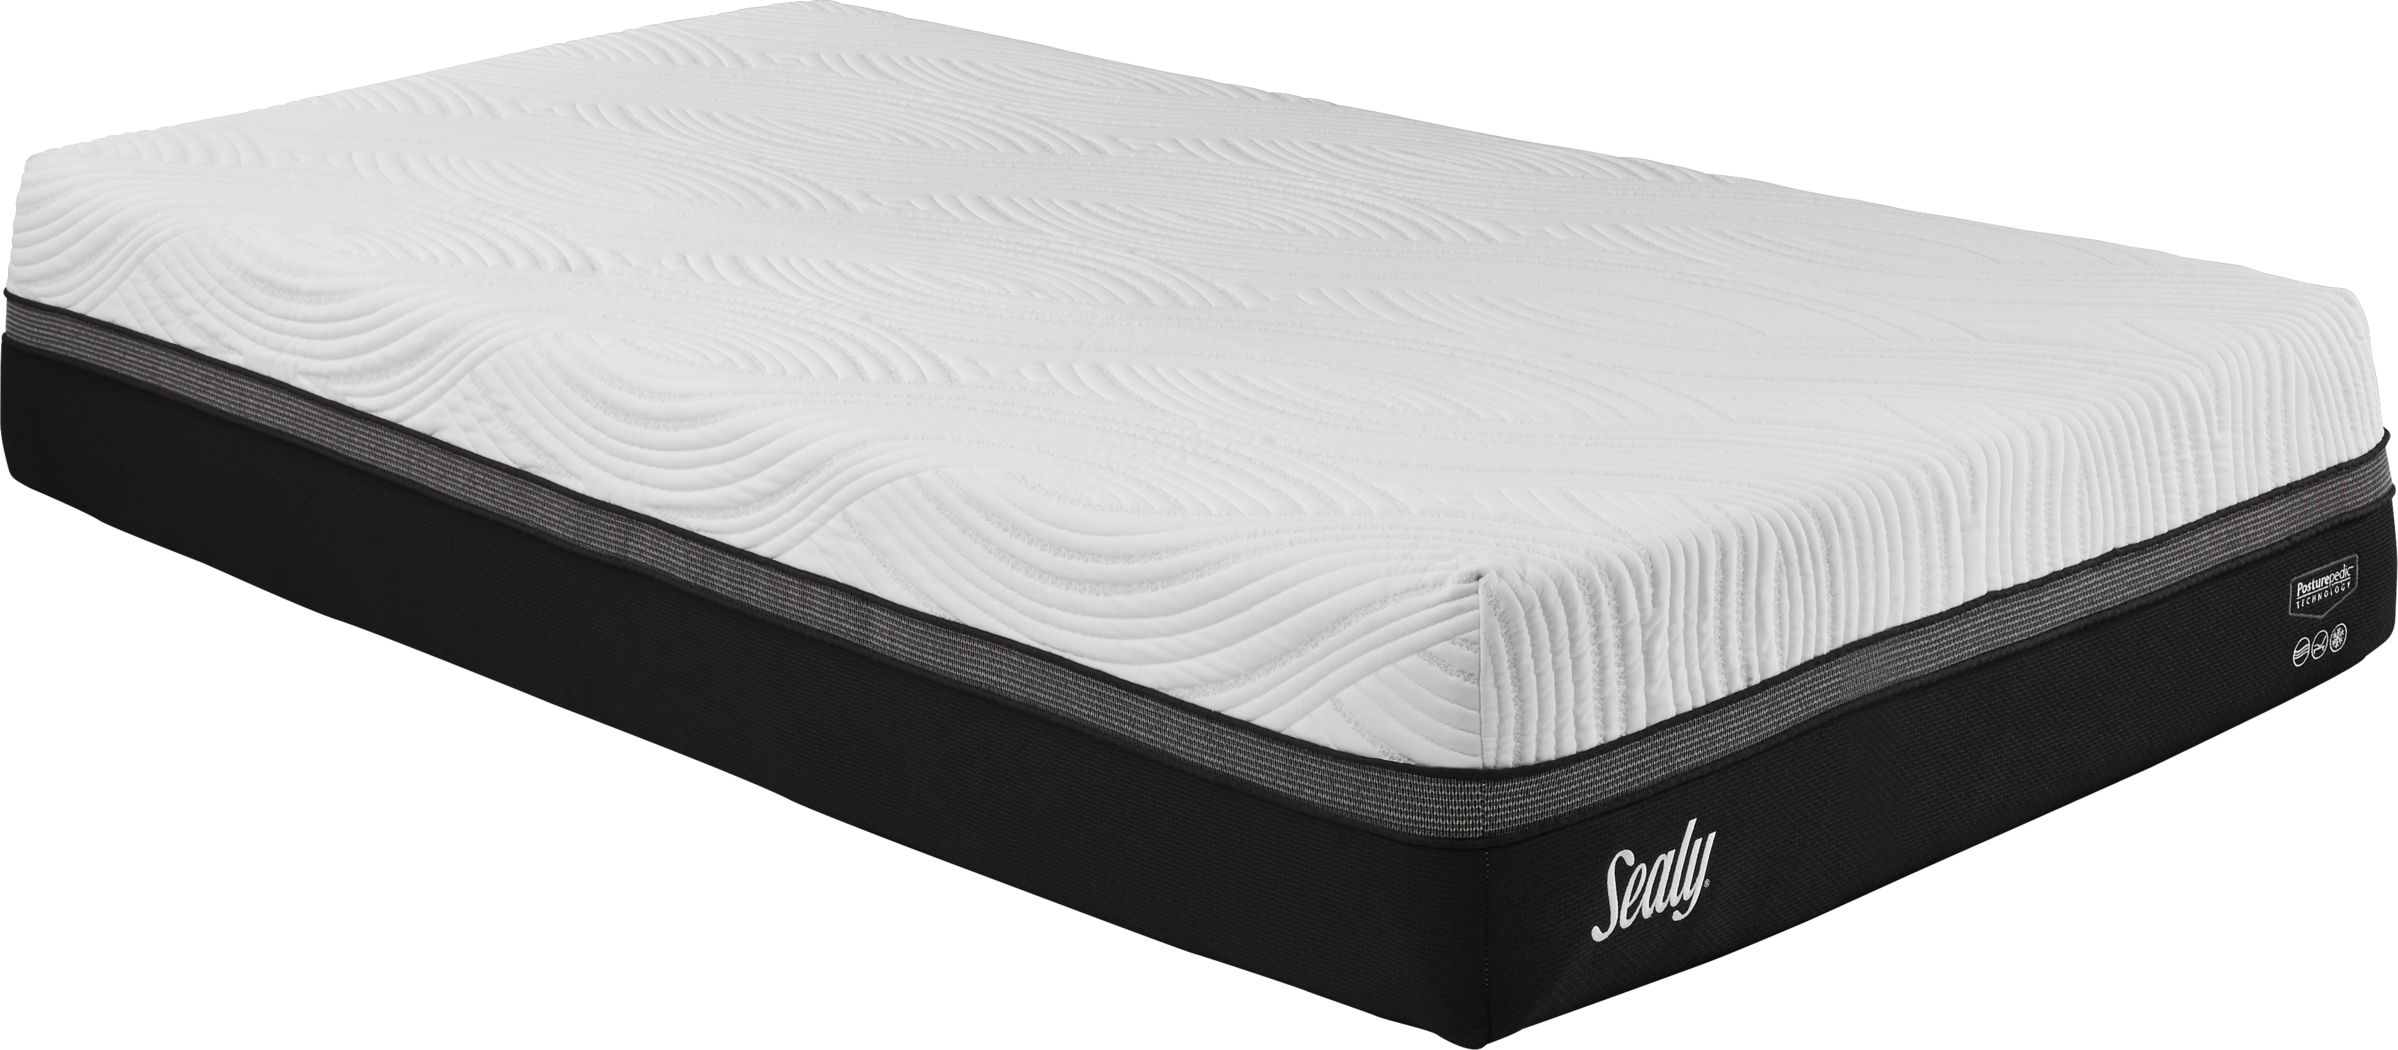 sealy mattress topper twin xl